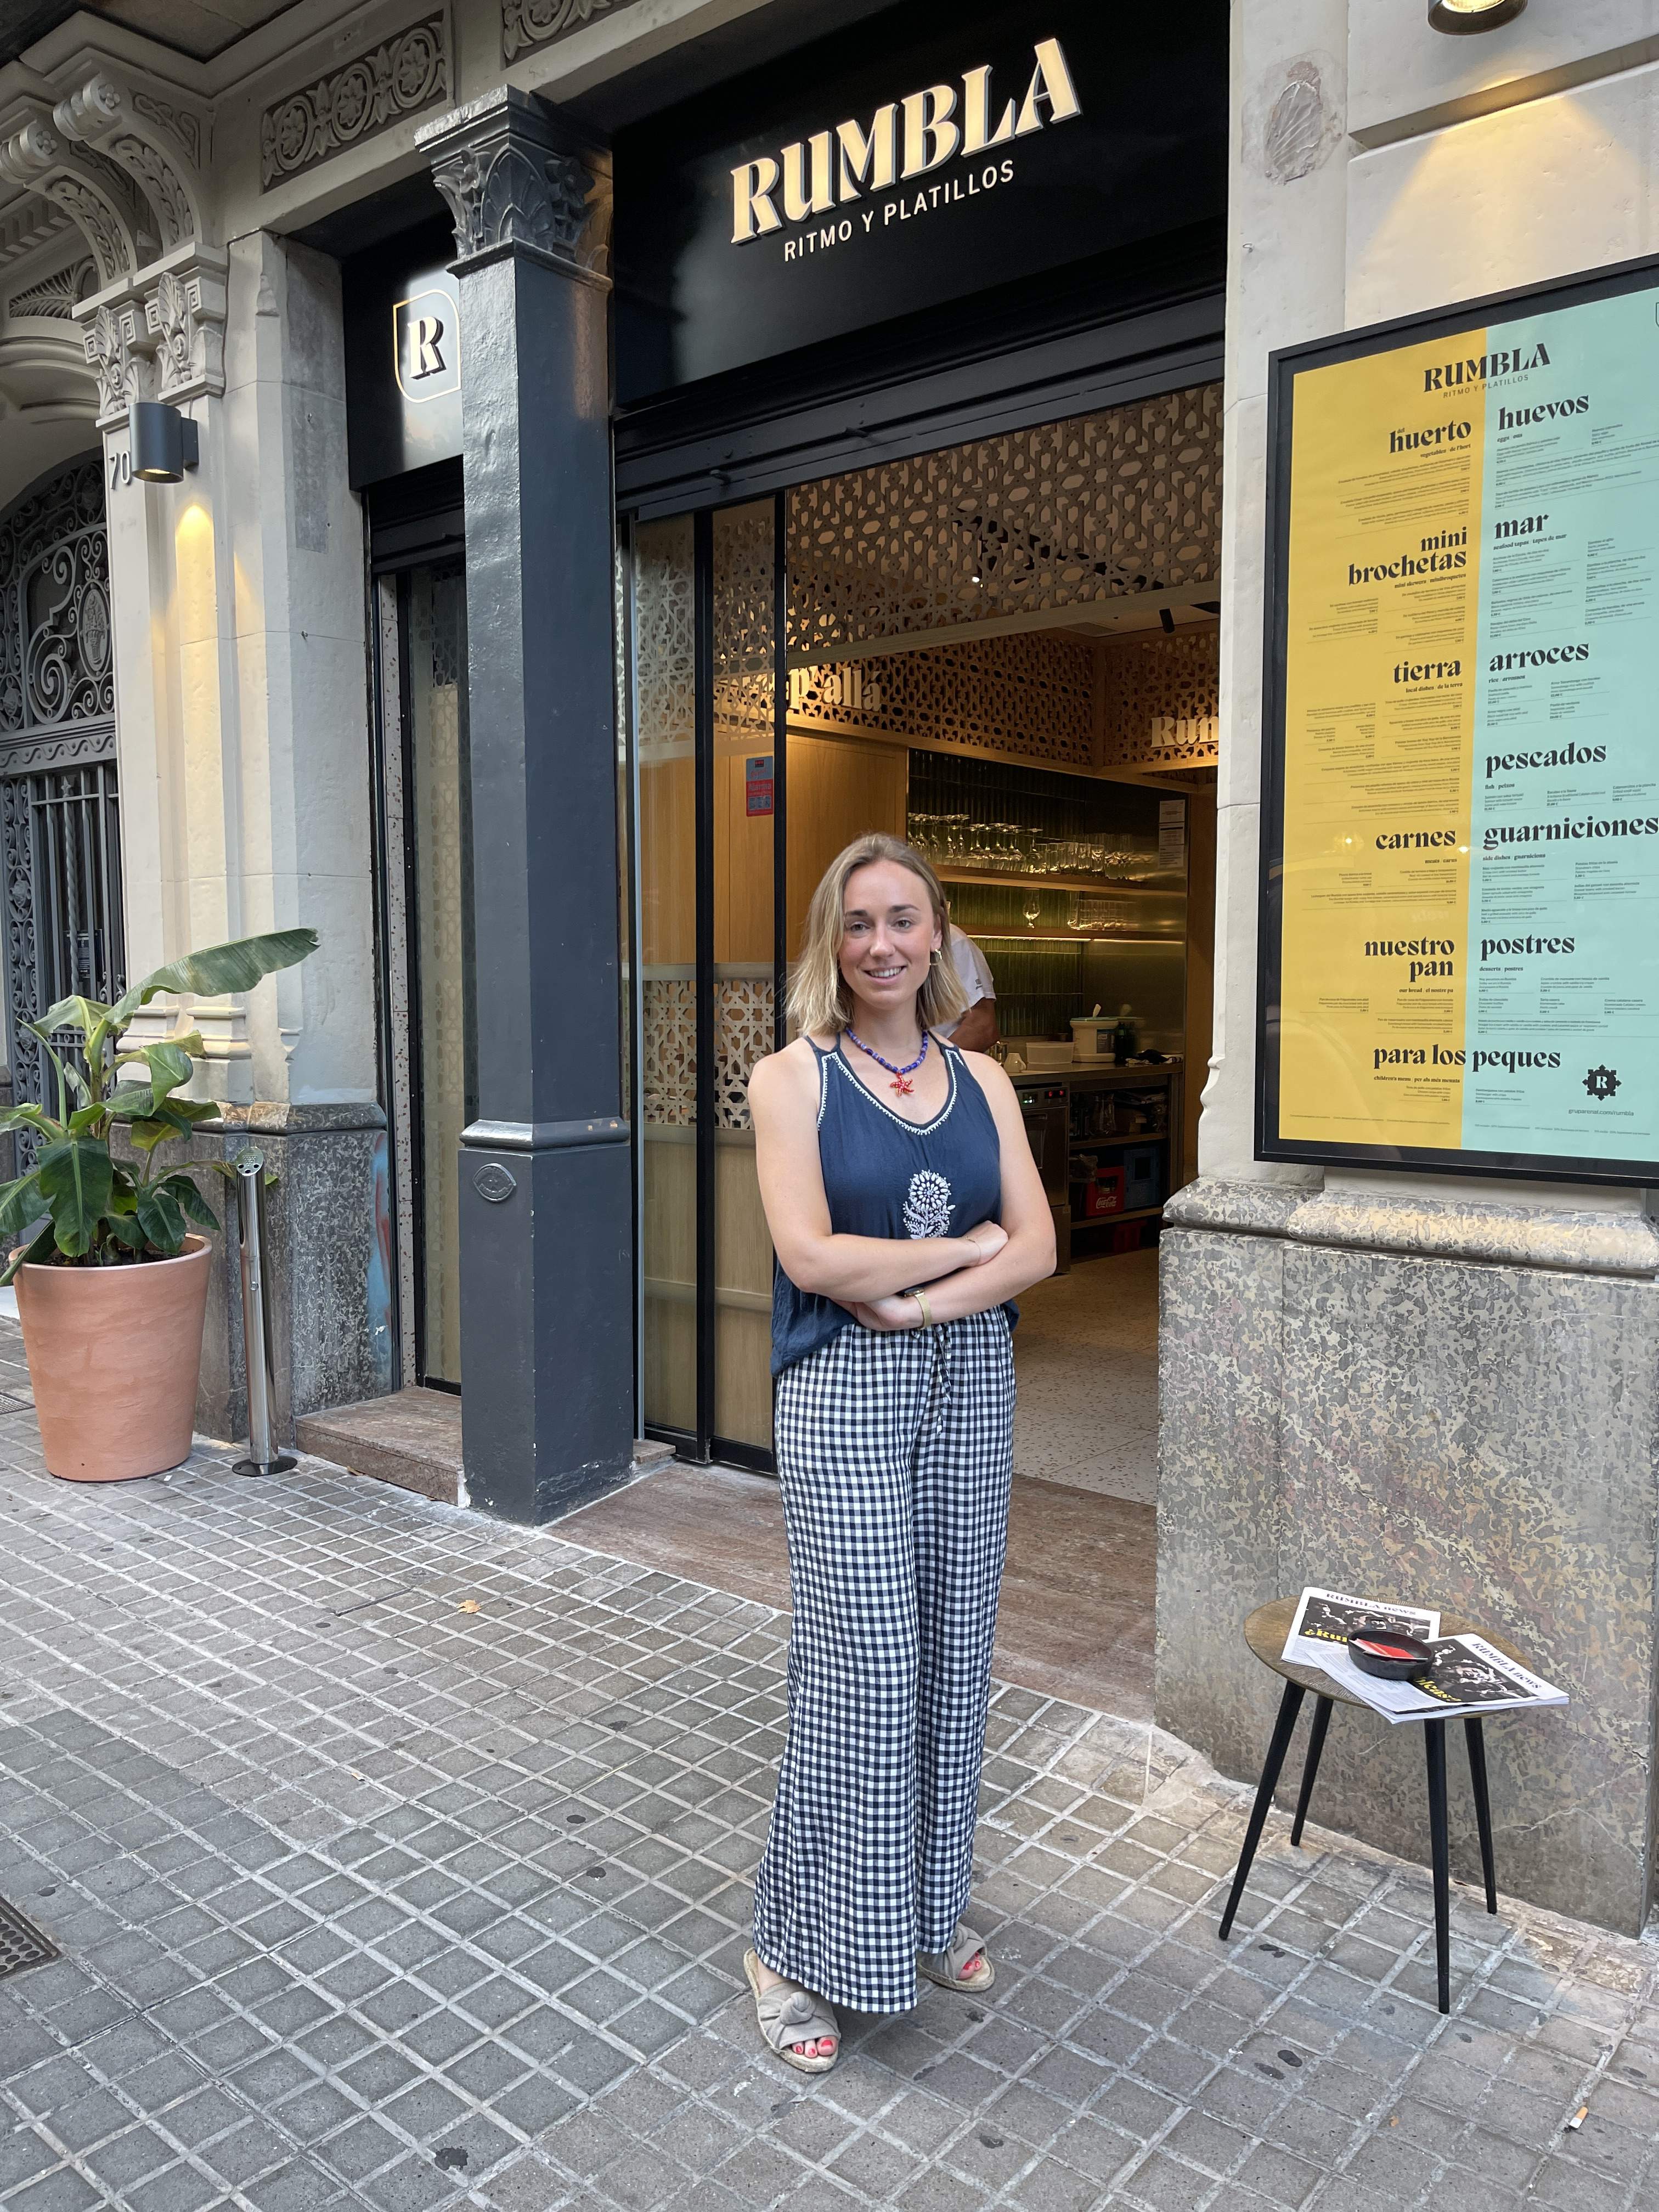 La rumba de este restaurante de Barcelona te dará ganas de subir encima de la mesa a bailar